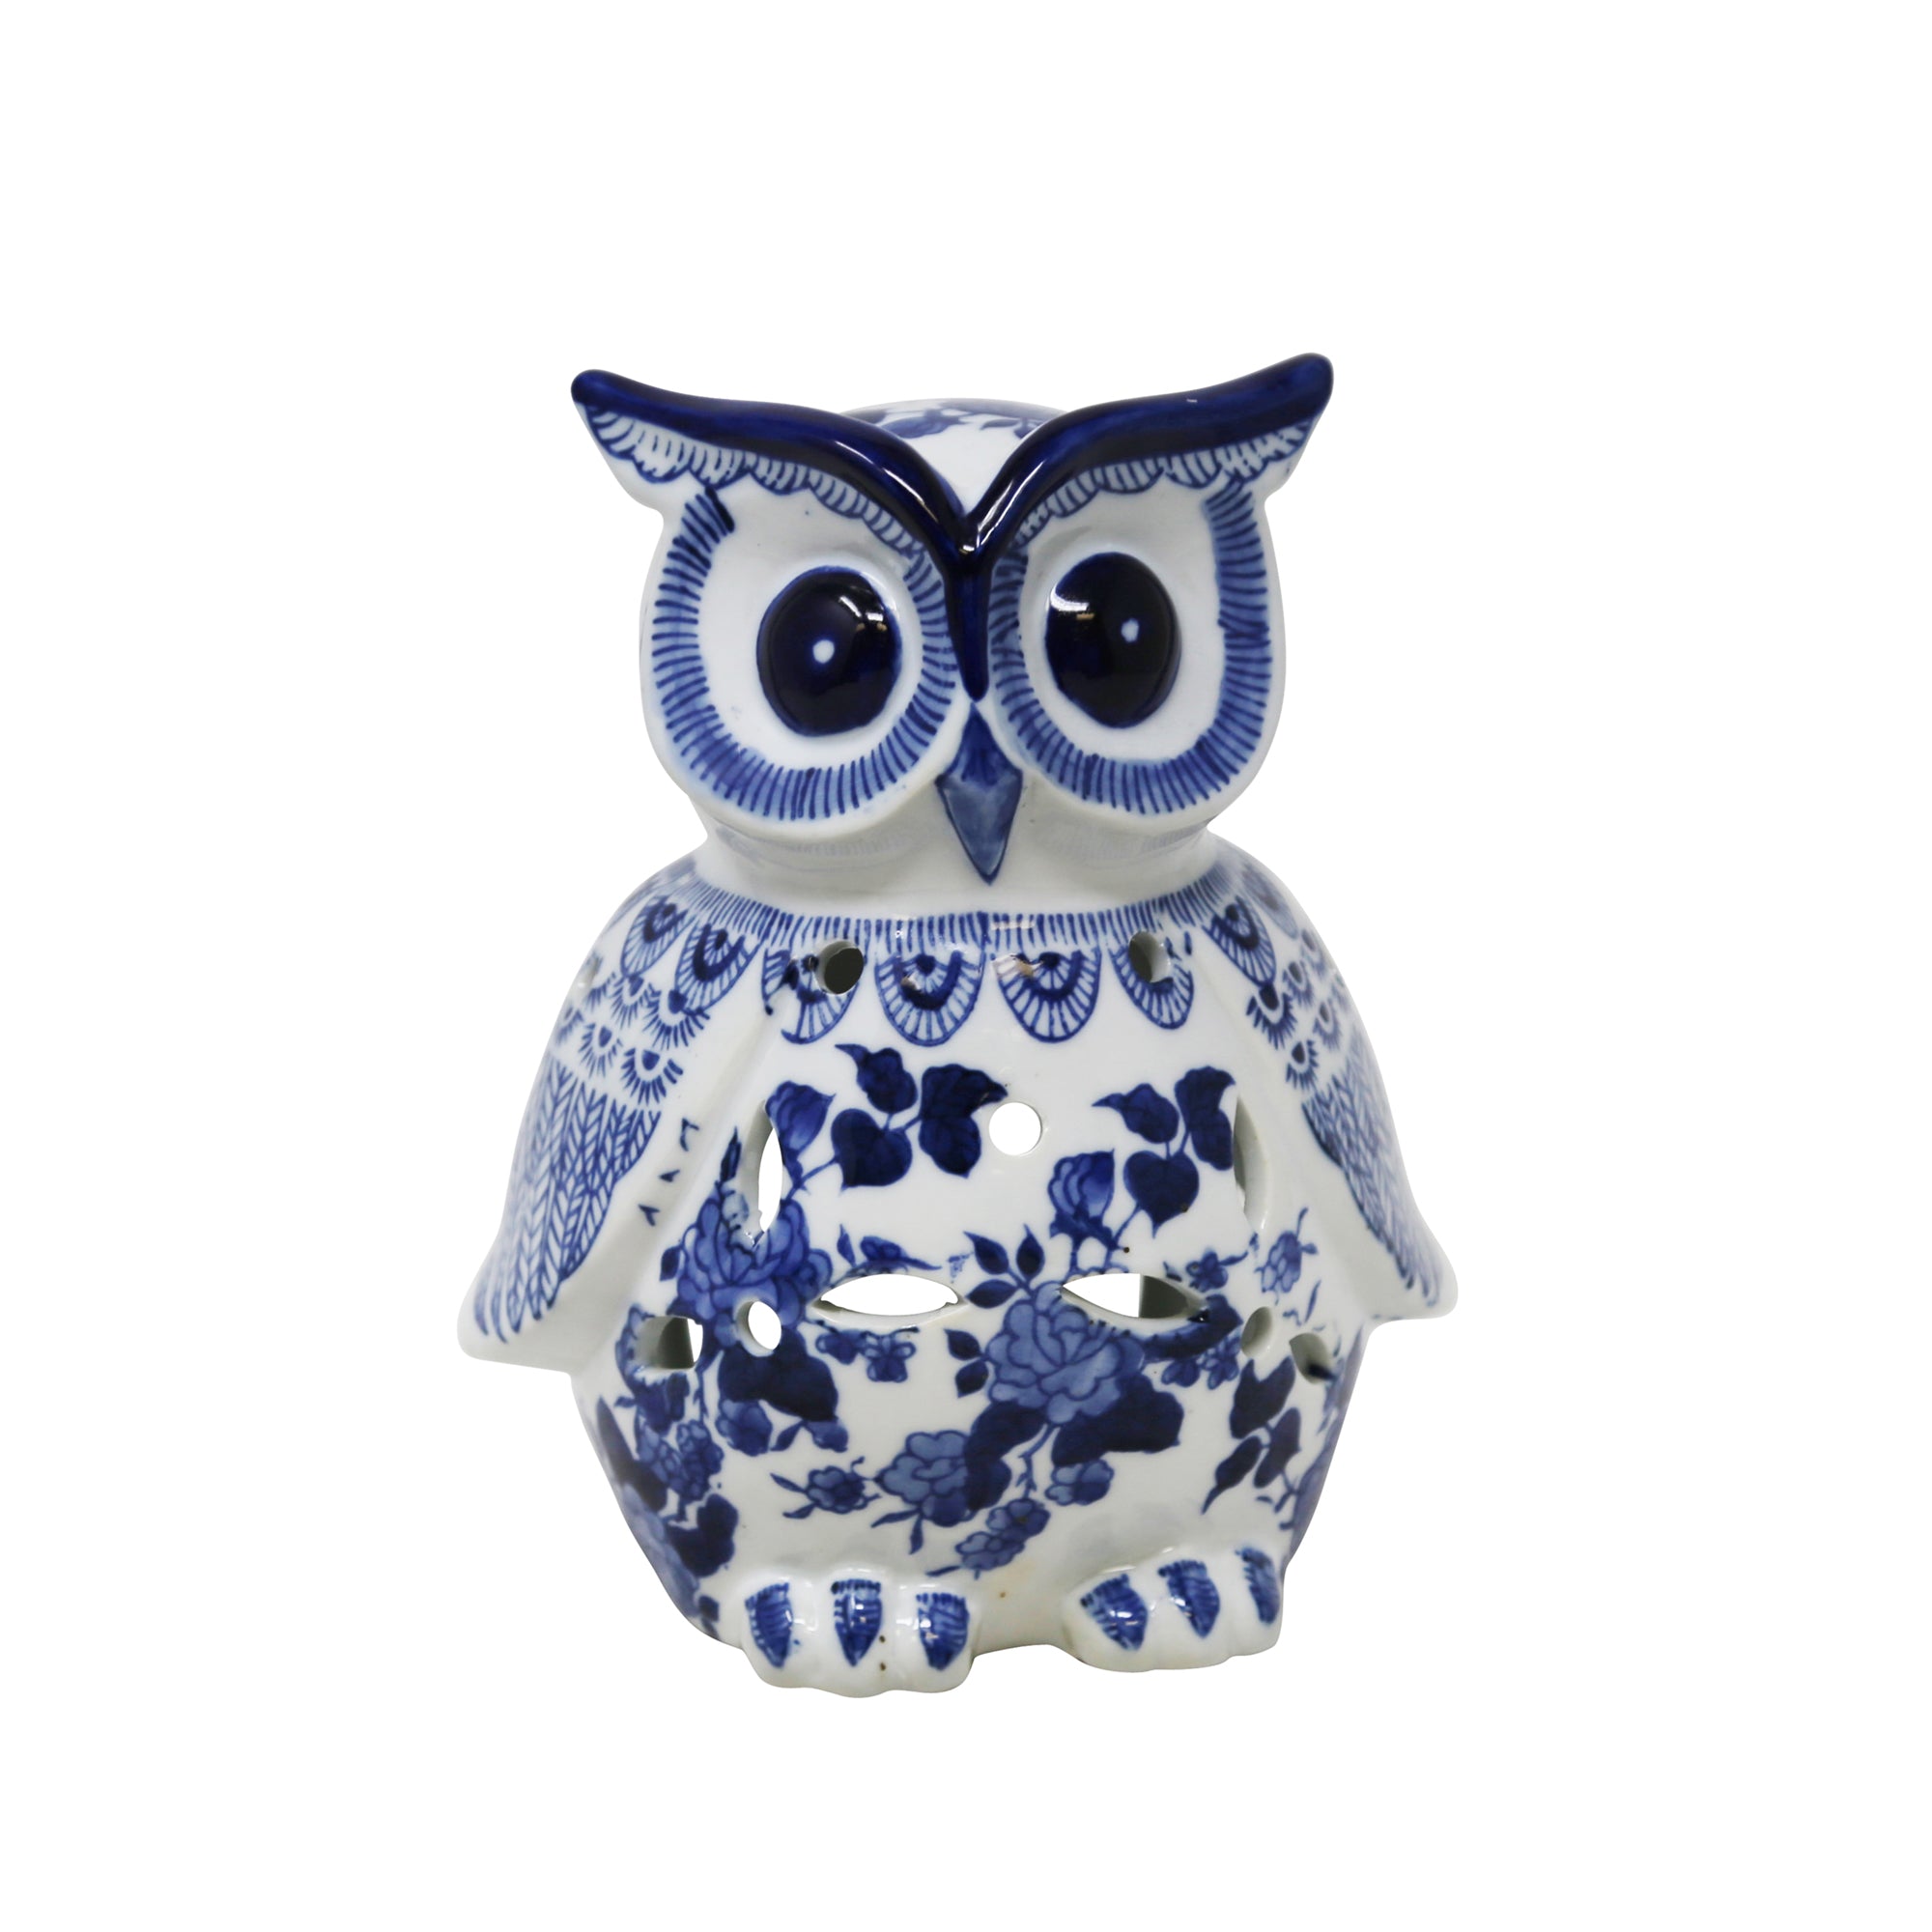 White/Blue Ceramic Owl 8", Figurines